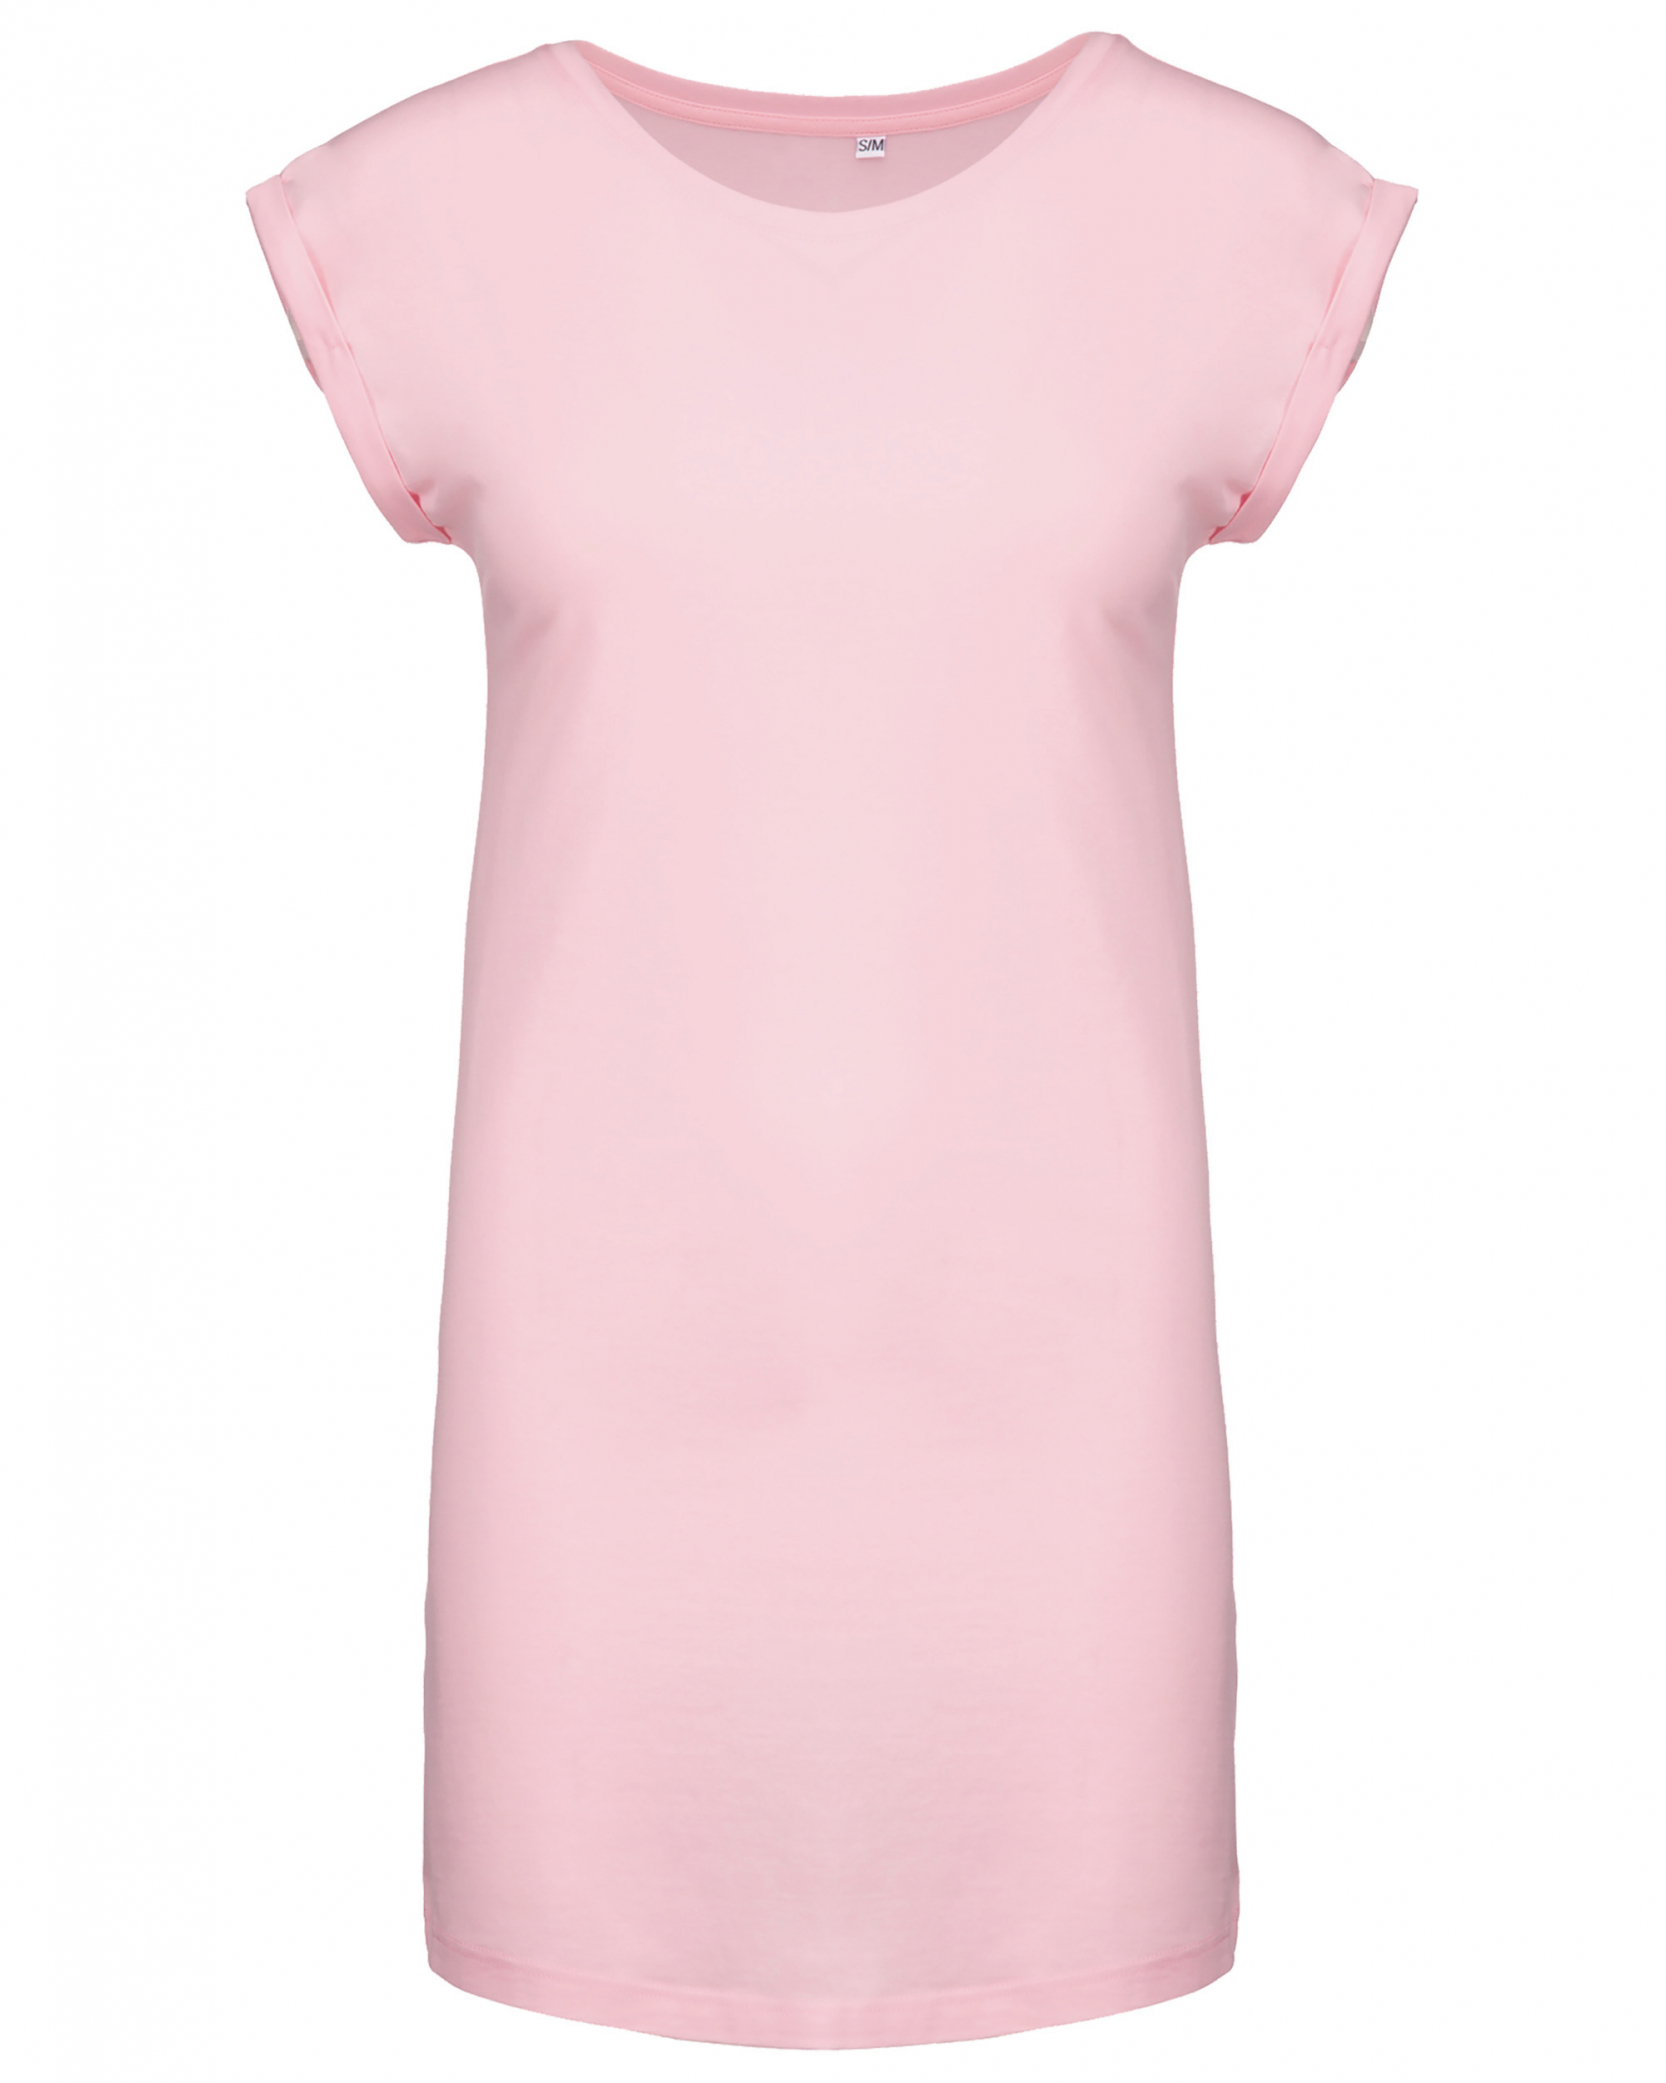 Dámské dlouhé tričko - šaty Barva: světle růžová, Velikost: S/M